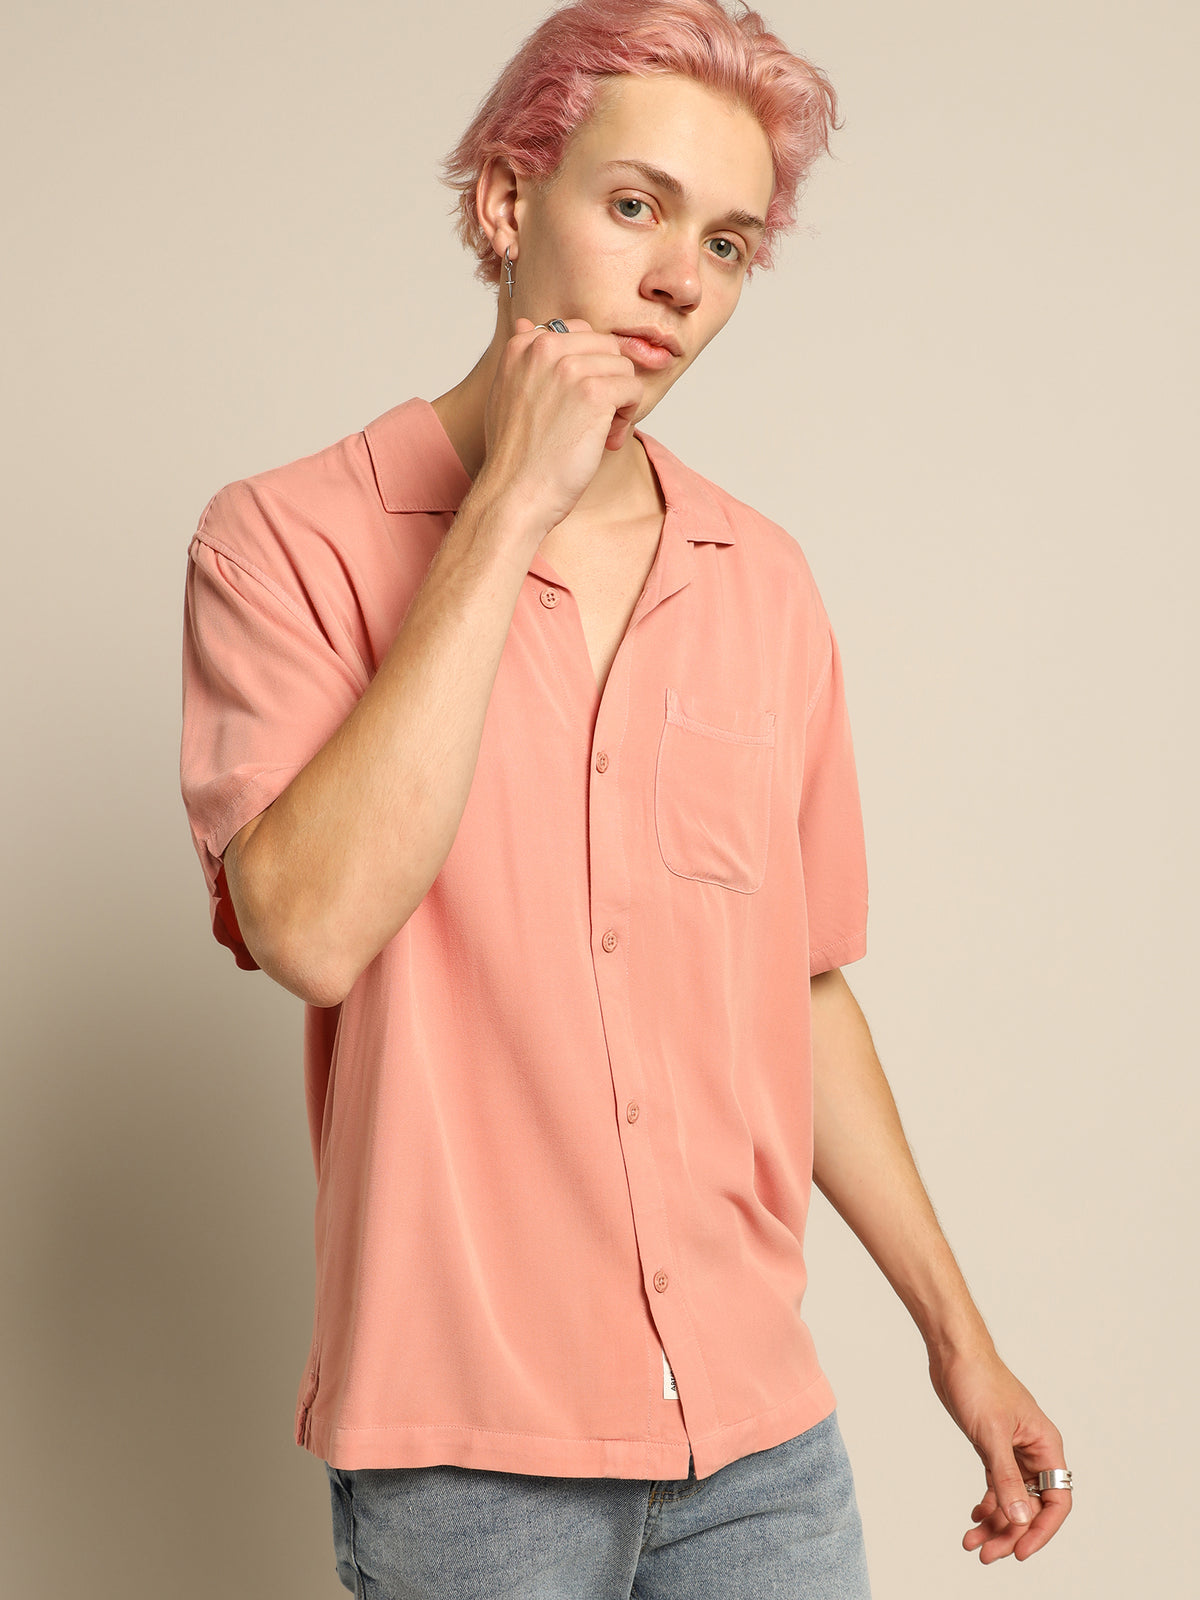 Saratoga Shirt in Pink